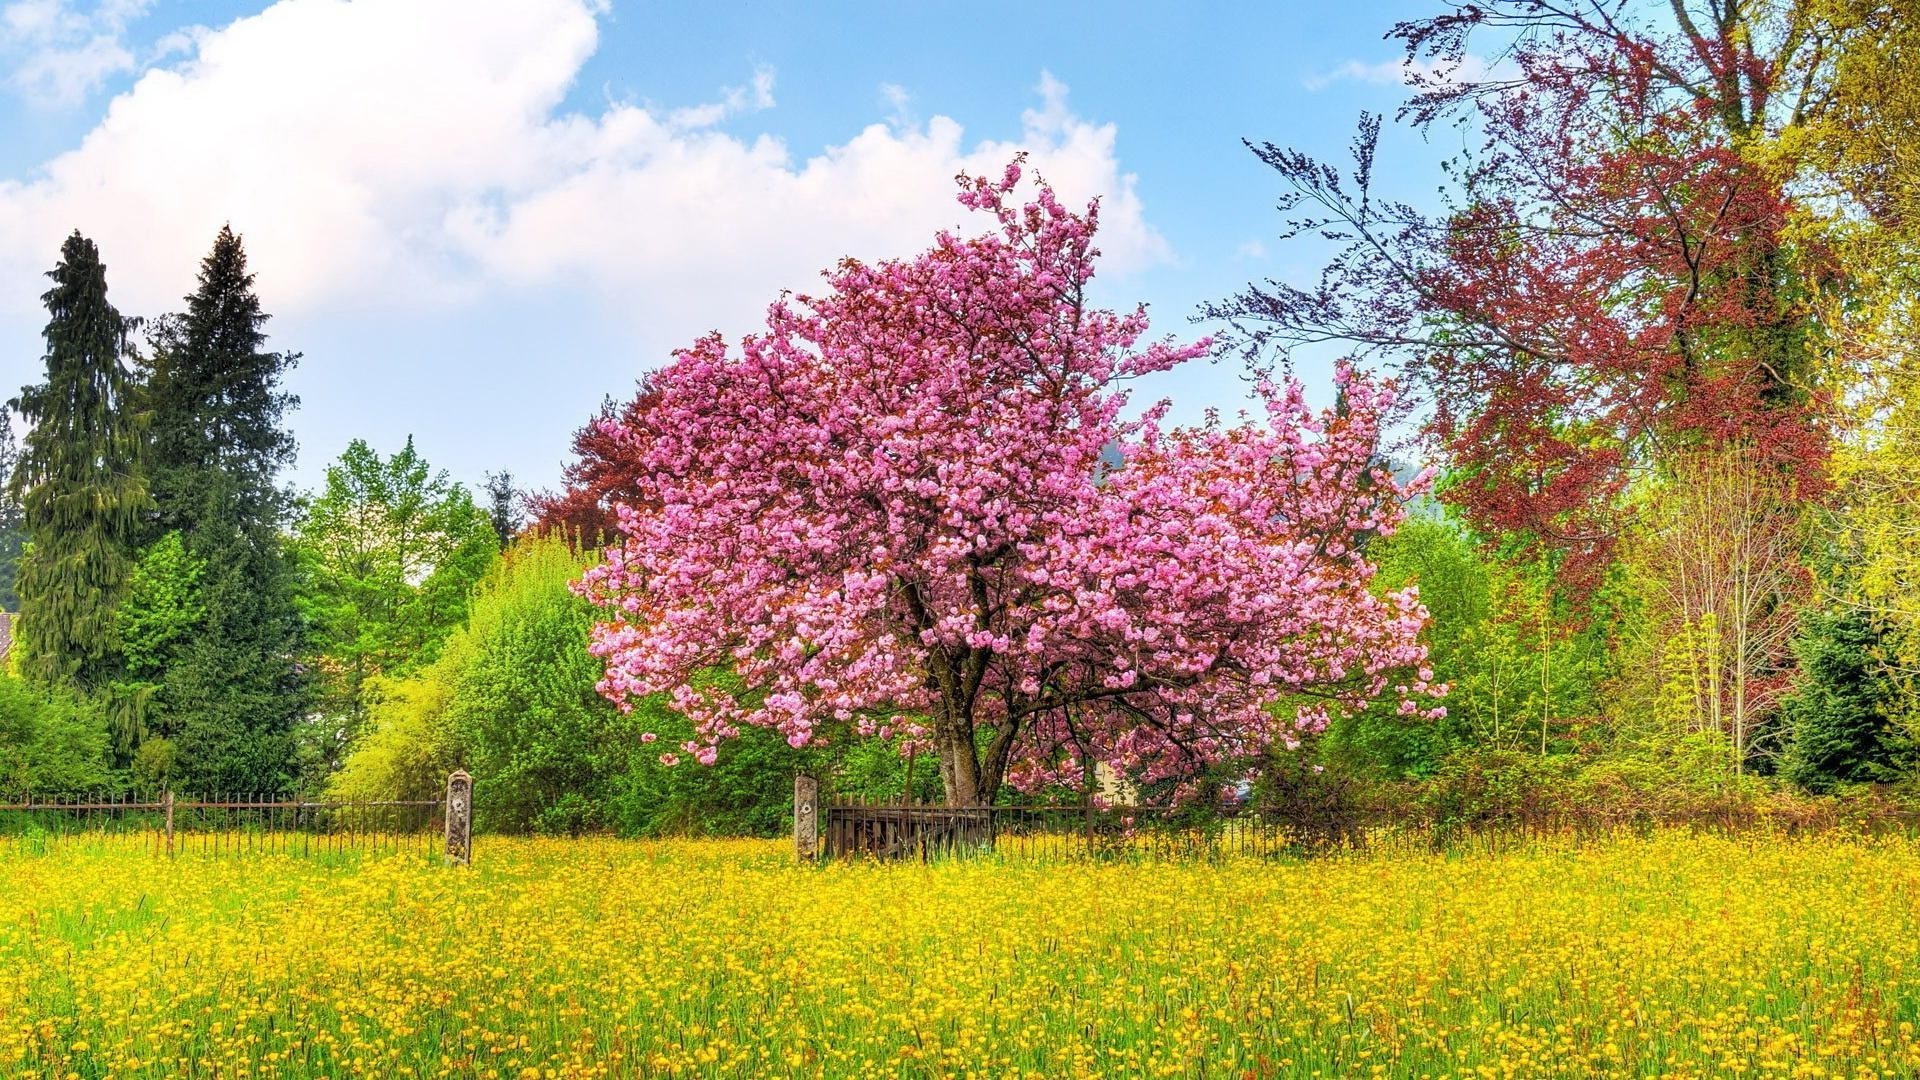 лето пейзаж дерево природа цветок сезон на открытом воздухе парк трава сенокос флора сельских древесины лист сцена сельской местности весна небо хорошую погоду